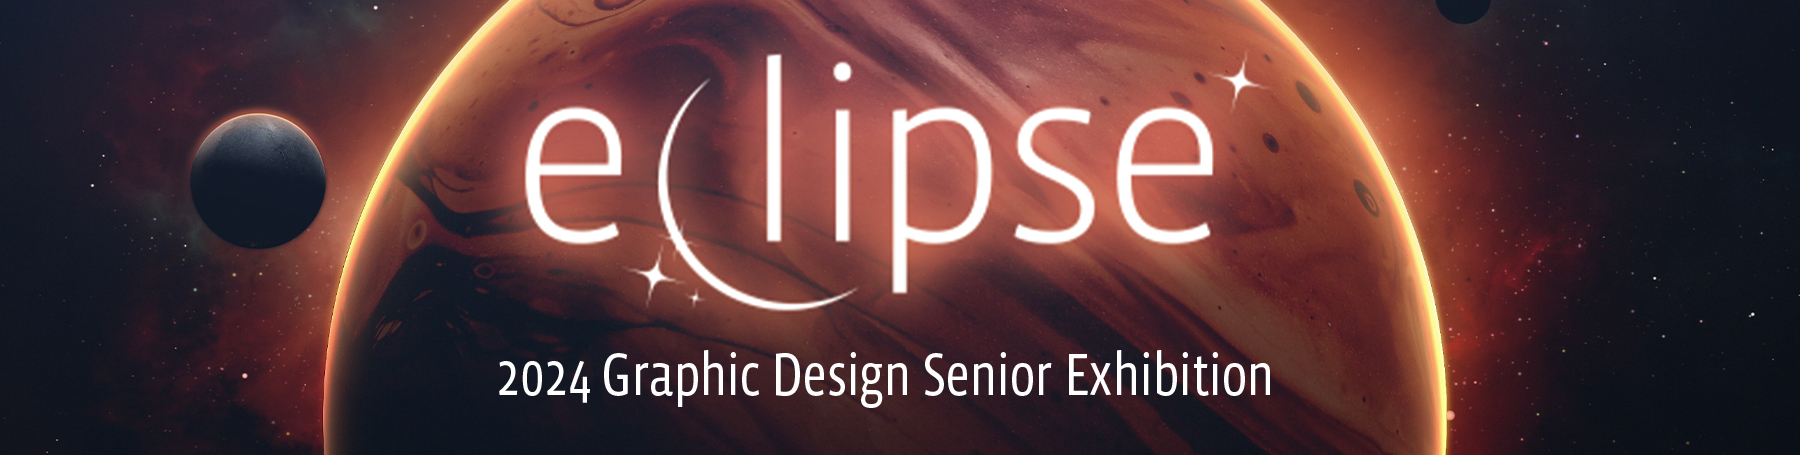 Eclipse, 2024 Graphic Design Senior Exhibition Header